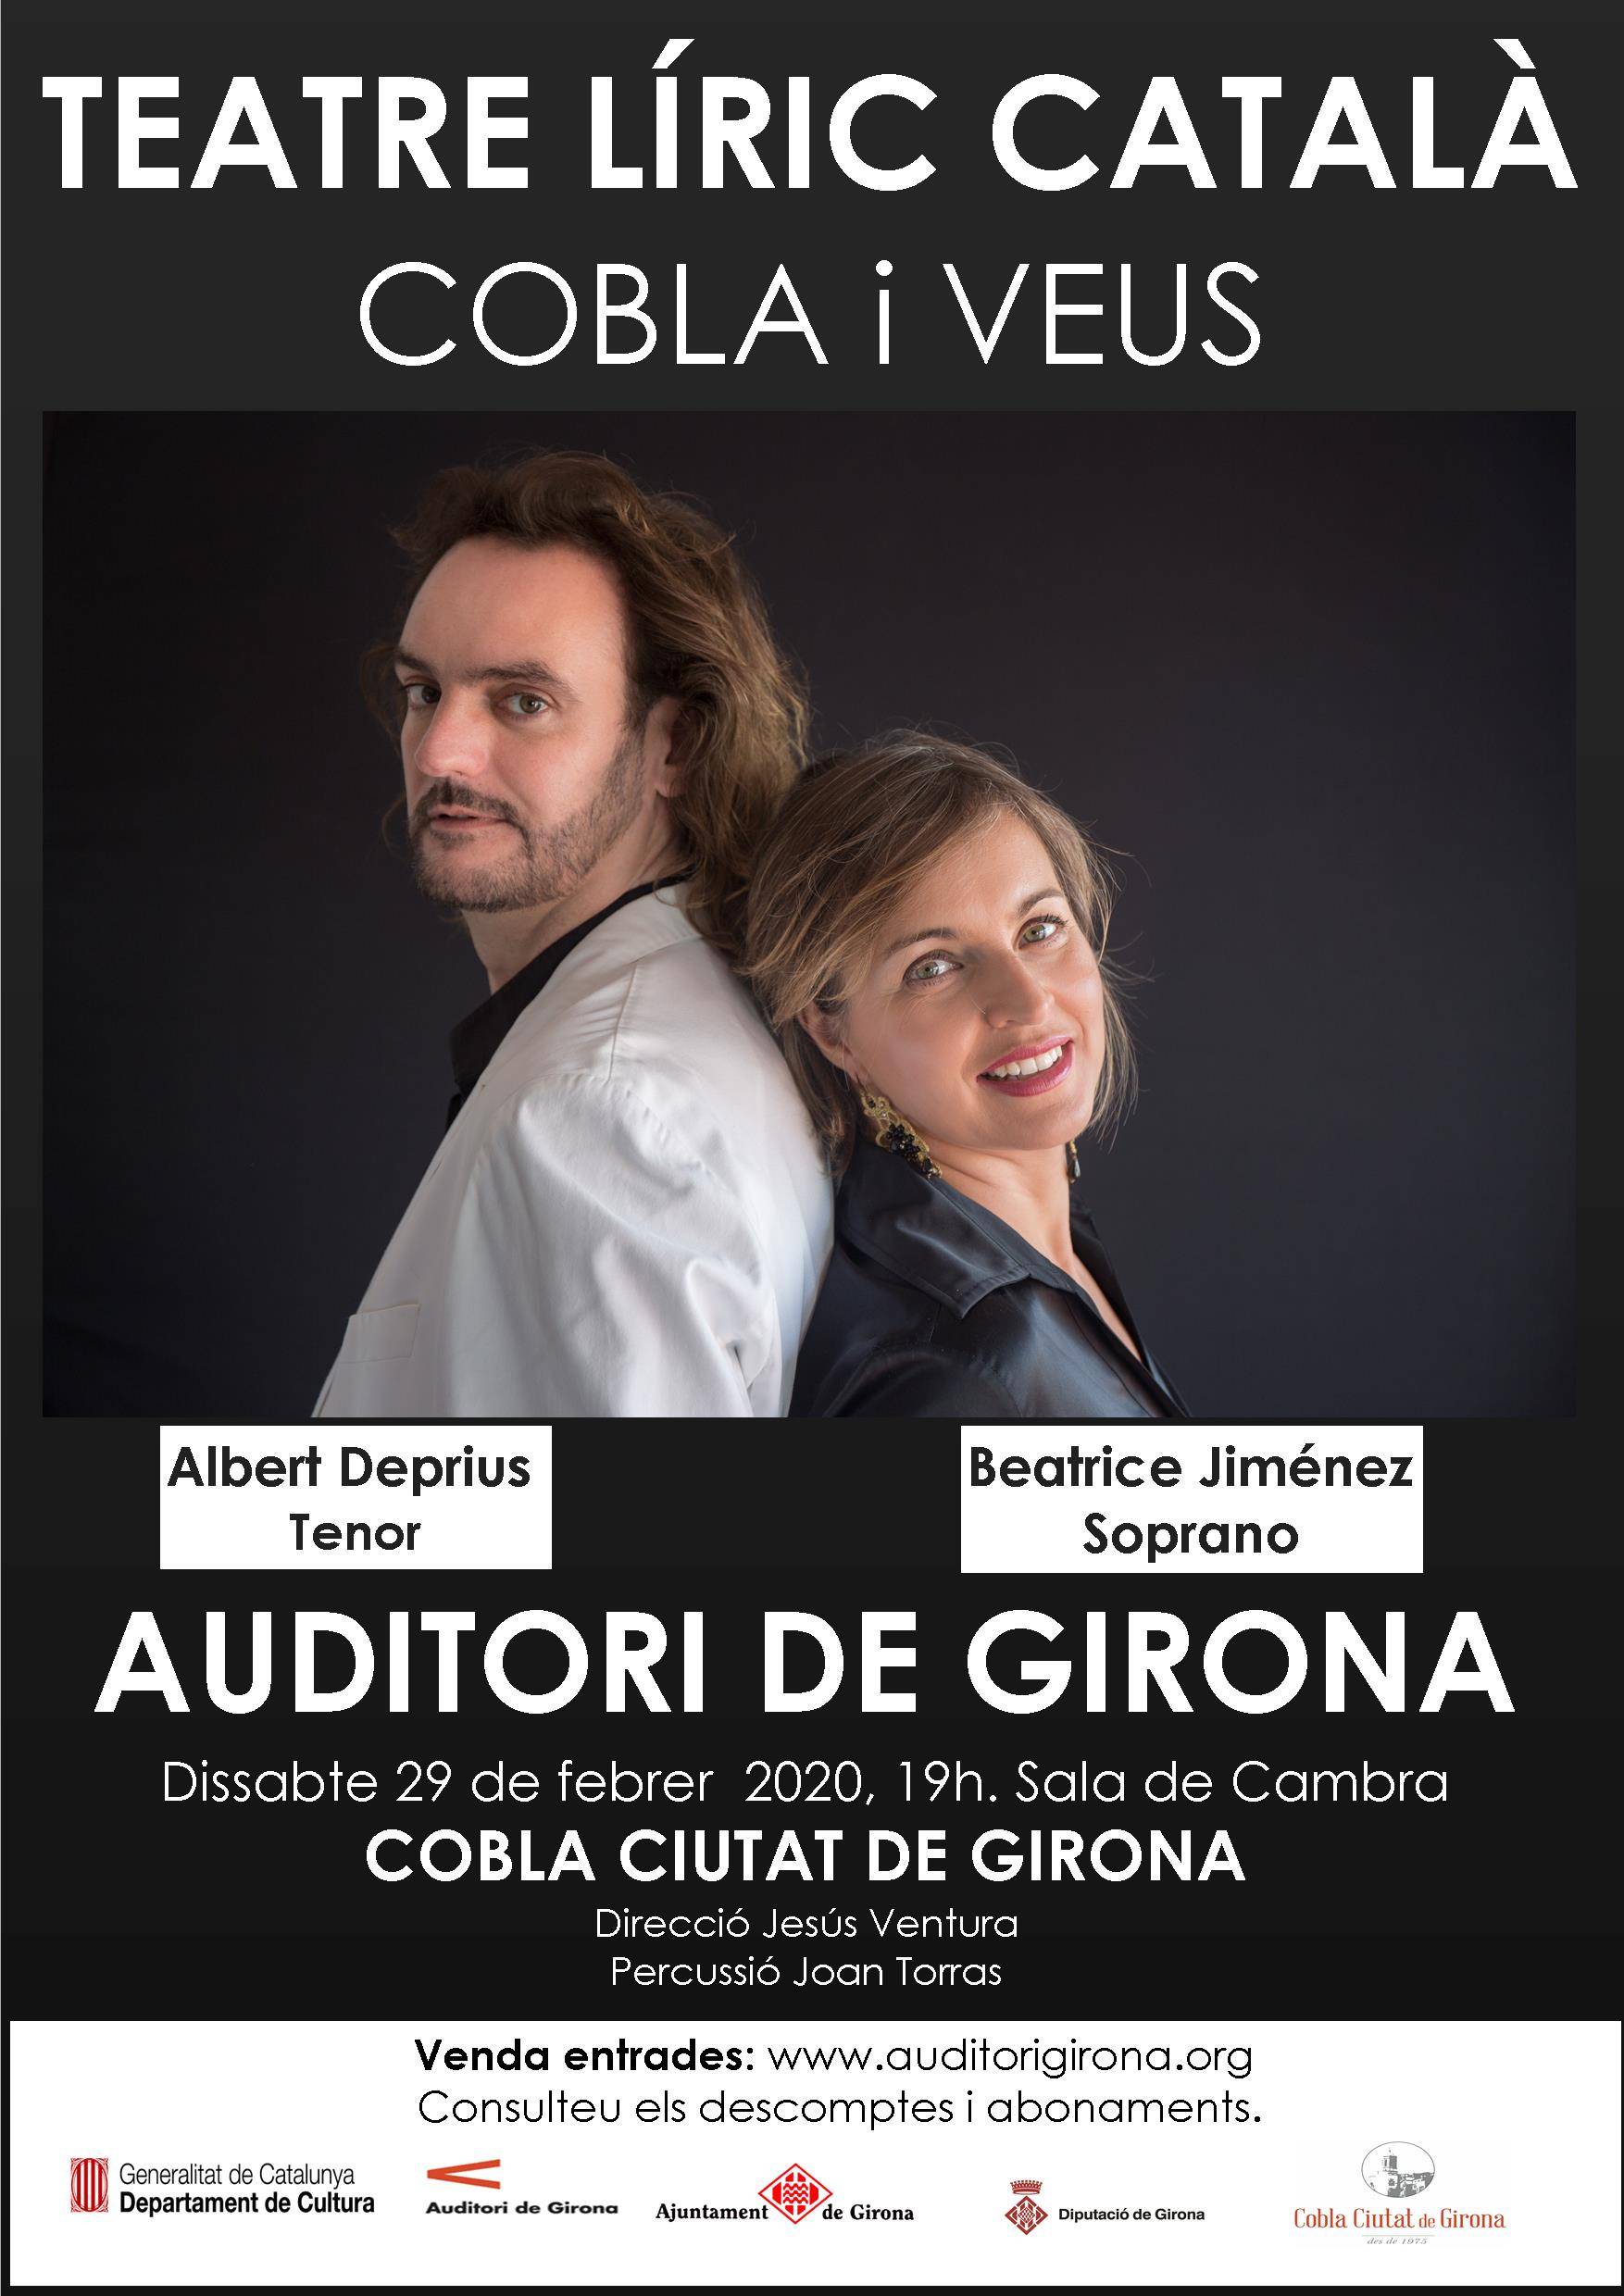 Teatre Líric Català, Cobla i Veus a l'Auditori de Girona al 29 de febrer.